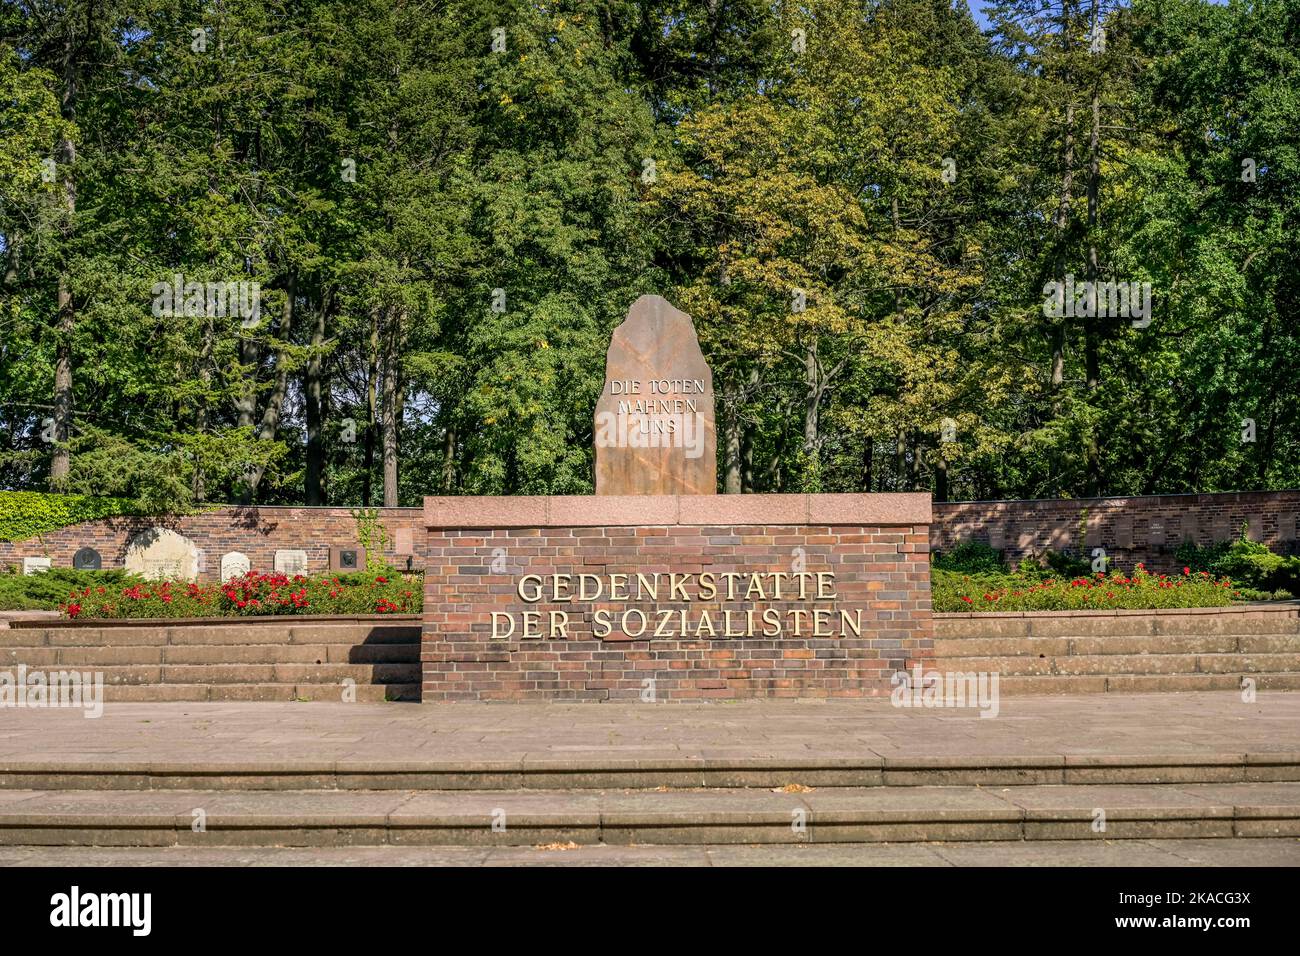 Gedenkstätte der Sozialisten, Zentralfriedhof Friedrichsfelde, Gudrunstraße, Lichtenberg, Berlin, Deutschland Stock Photo